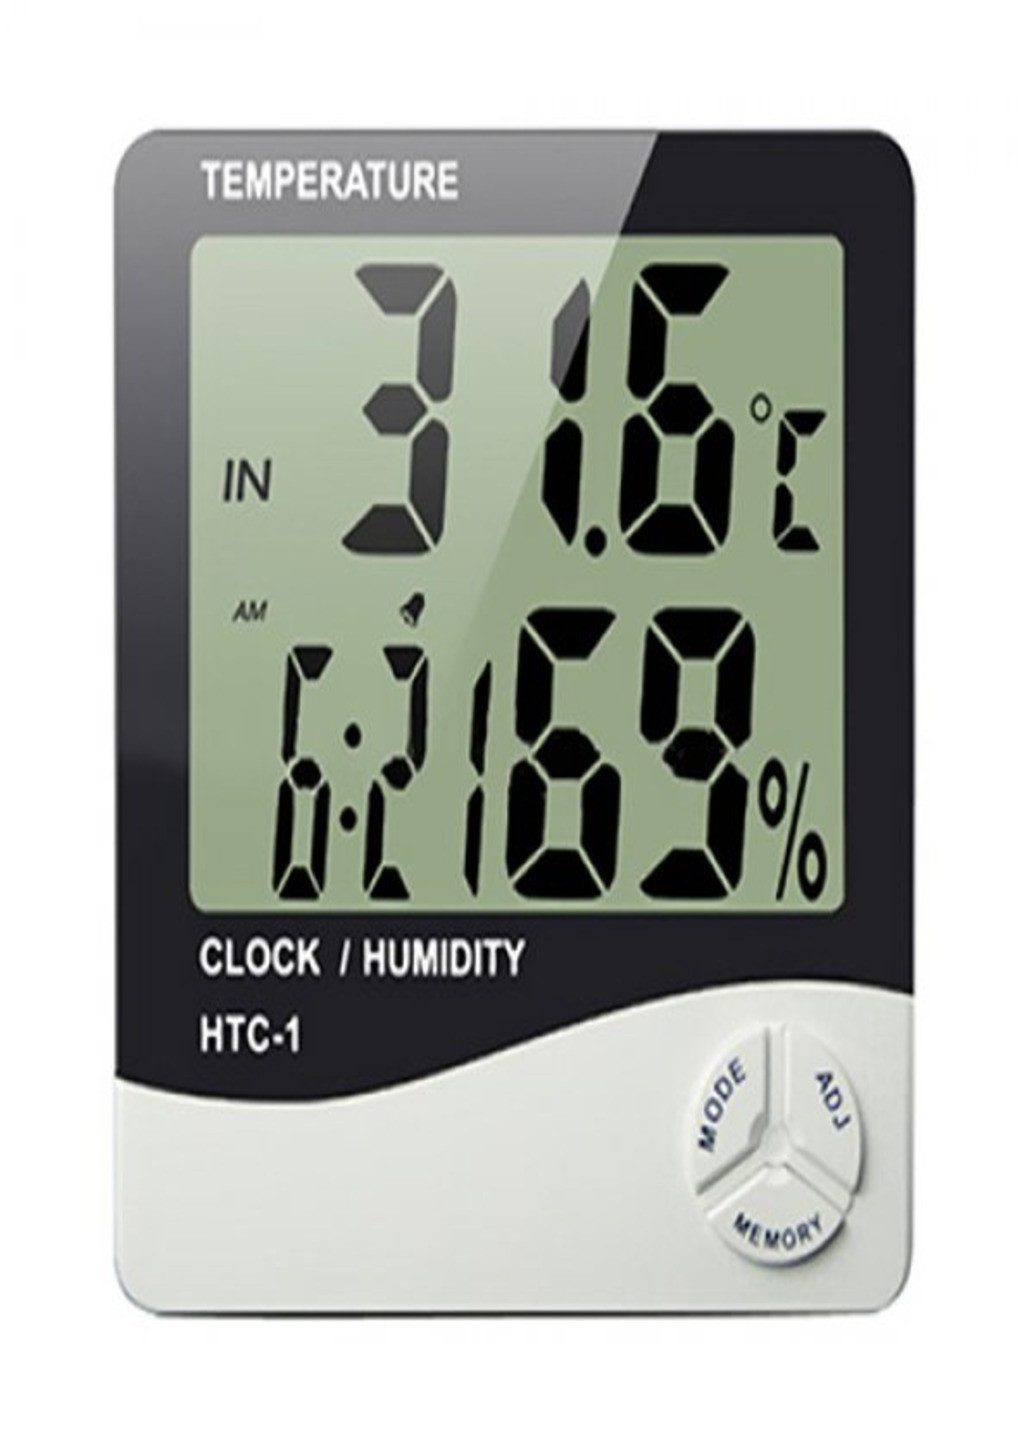 Гигрометр, термометр с измерителем влажности Термогигрометр цифровой - 1 часы будильник метеостанция HTC (253082183)